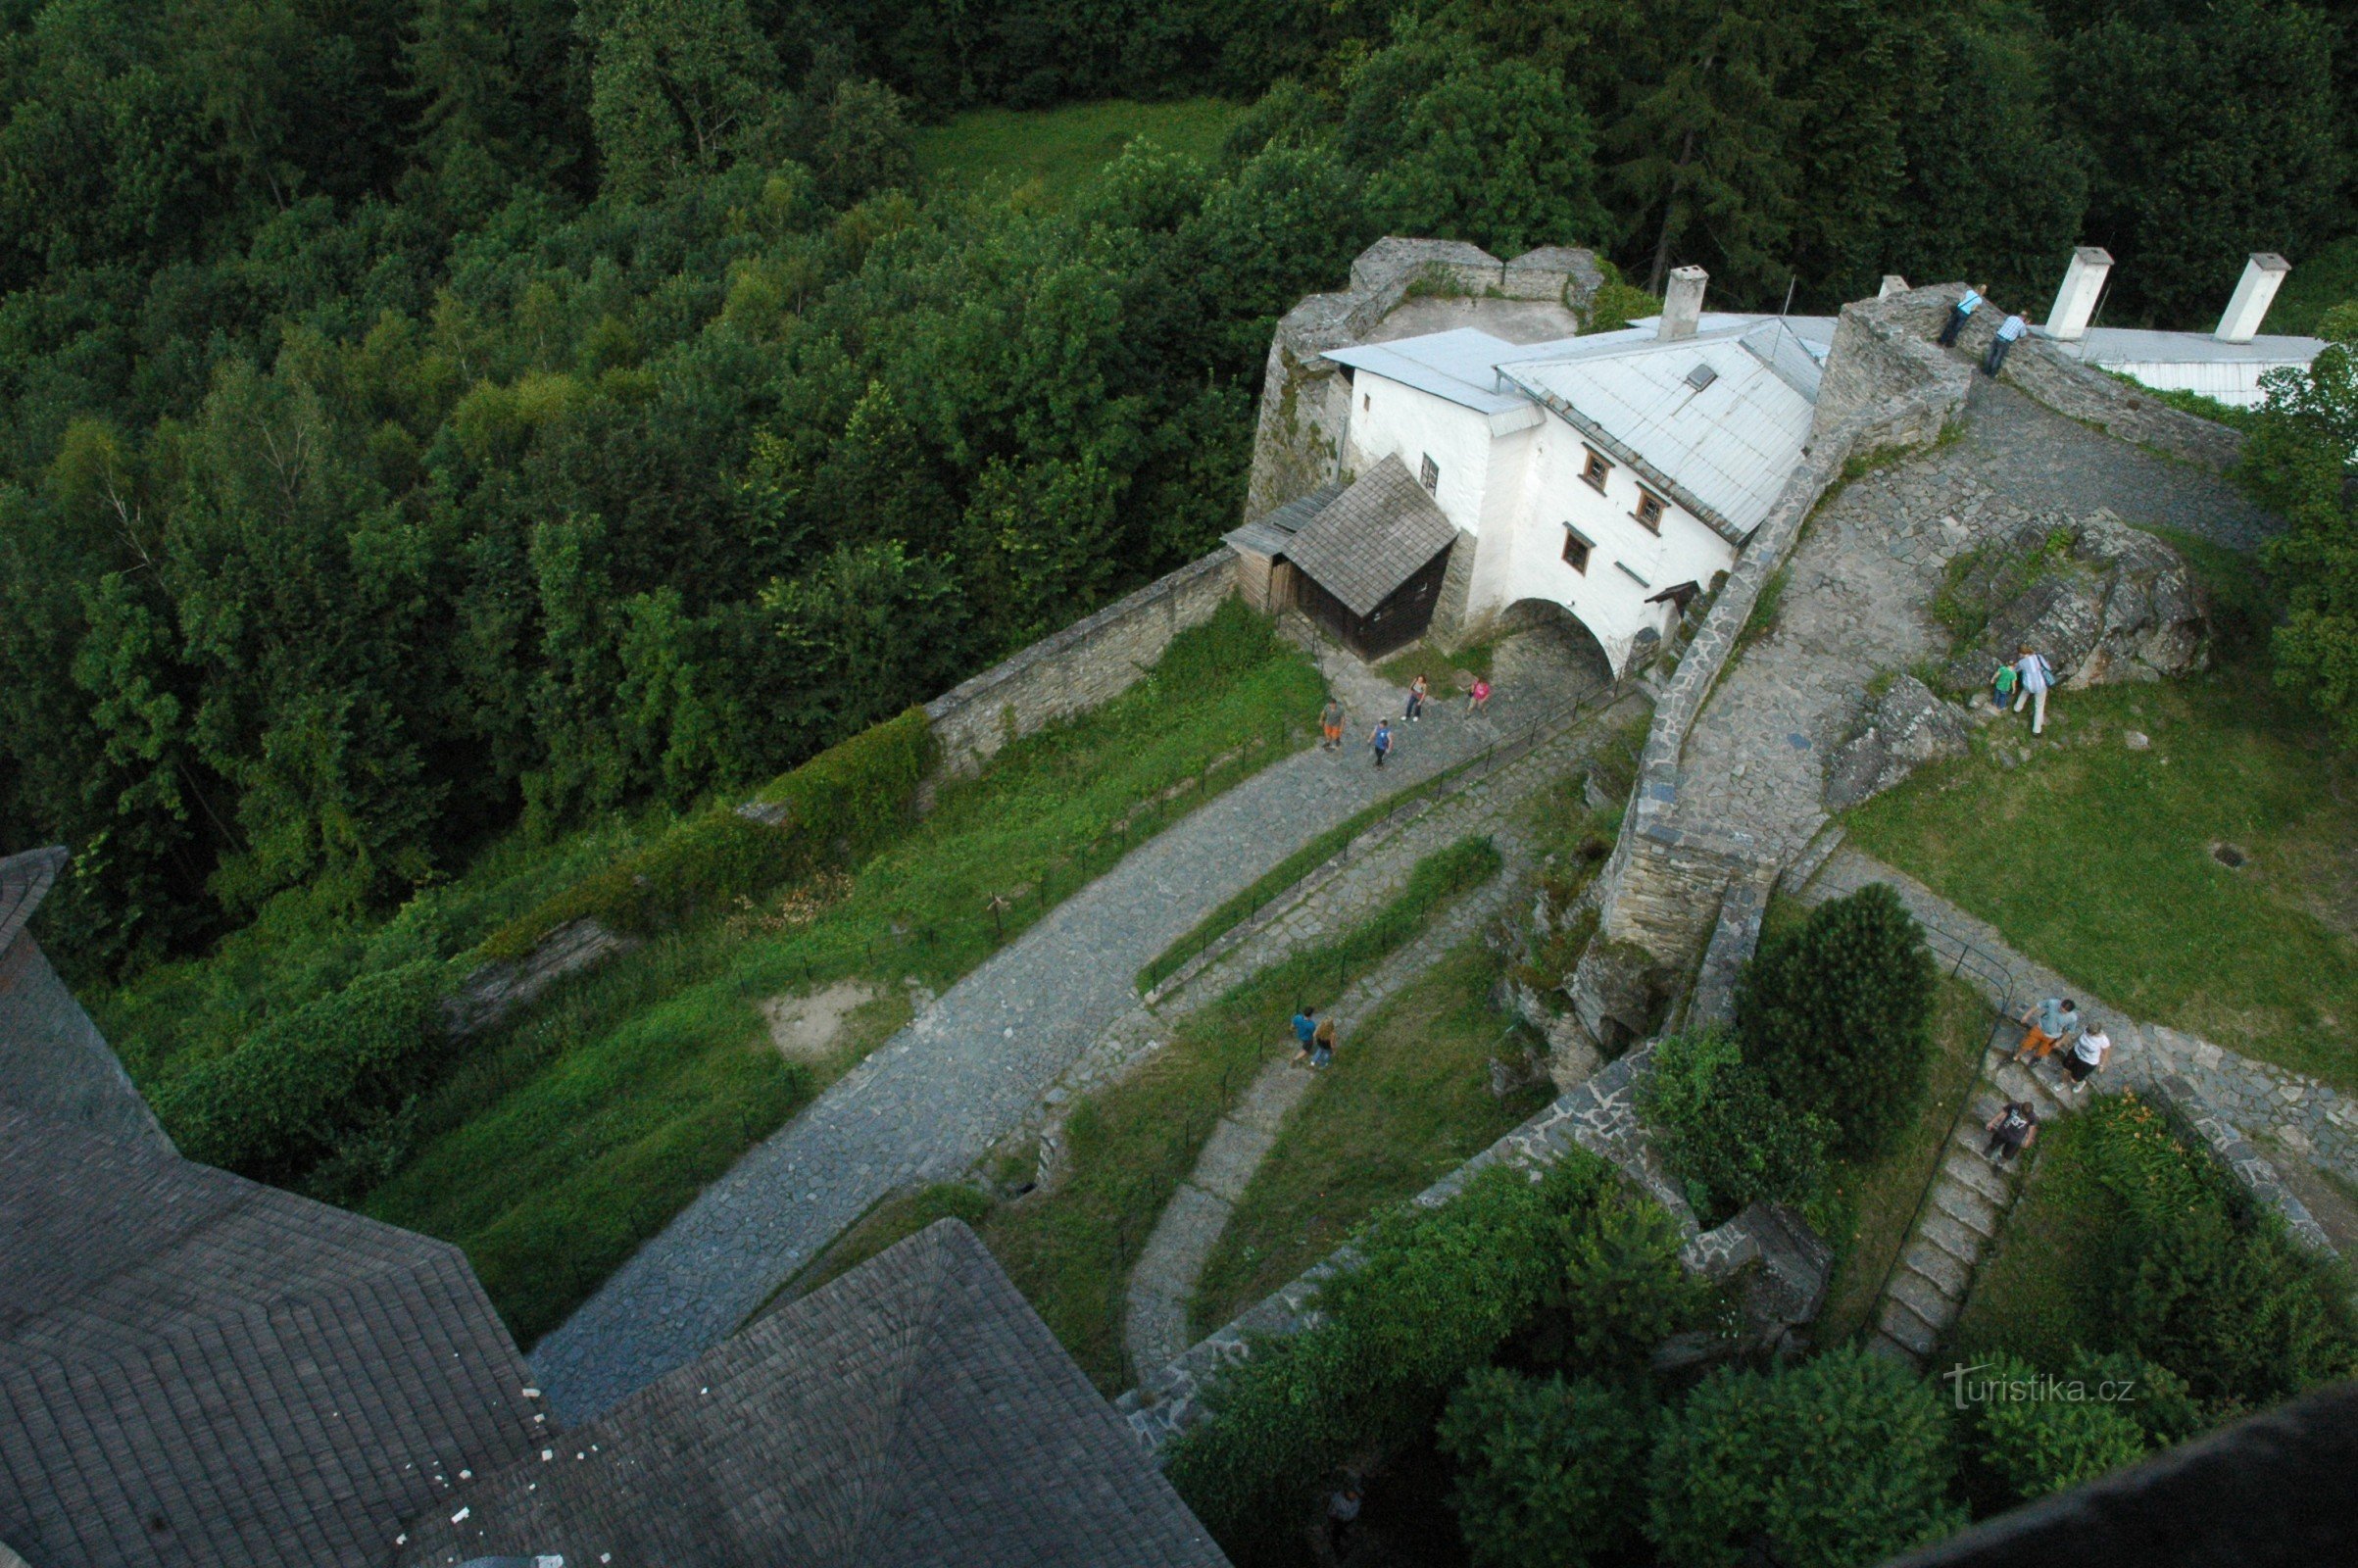 O Castelo Sovinec não é habitado por corujas, mas sim por morcegos